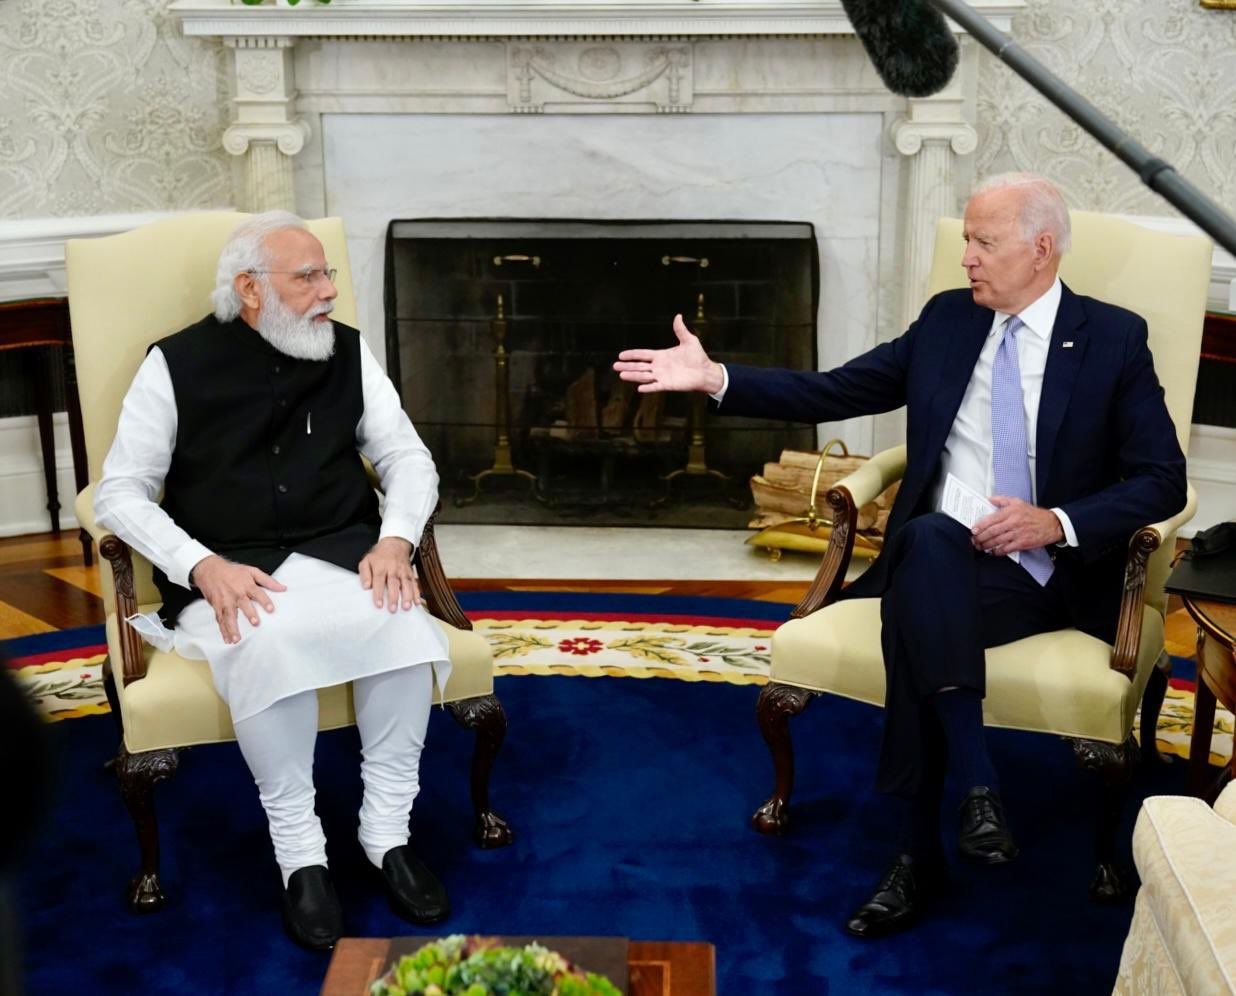 Gandhi’s values to talks on trade: Highlights from Modi-Biden bilateral talks